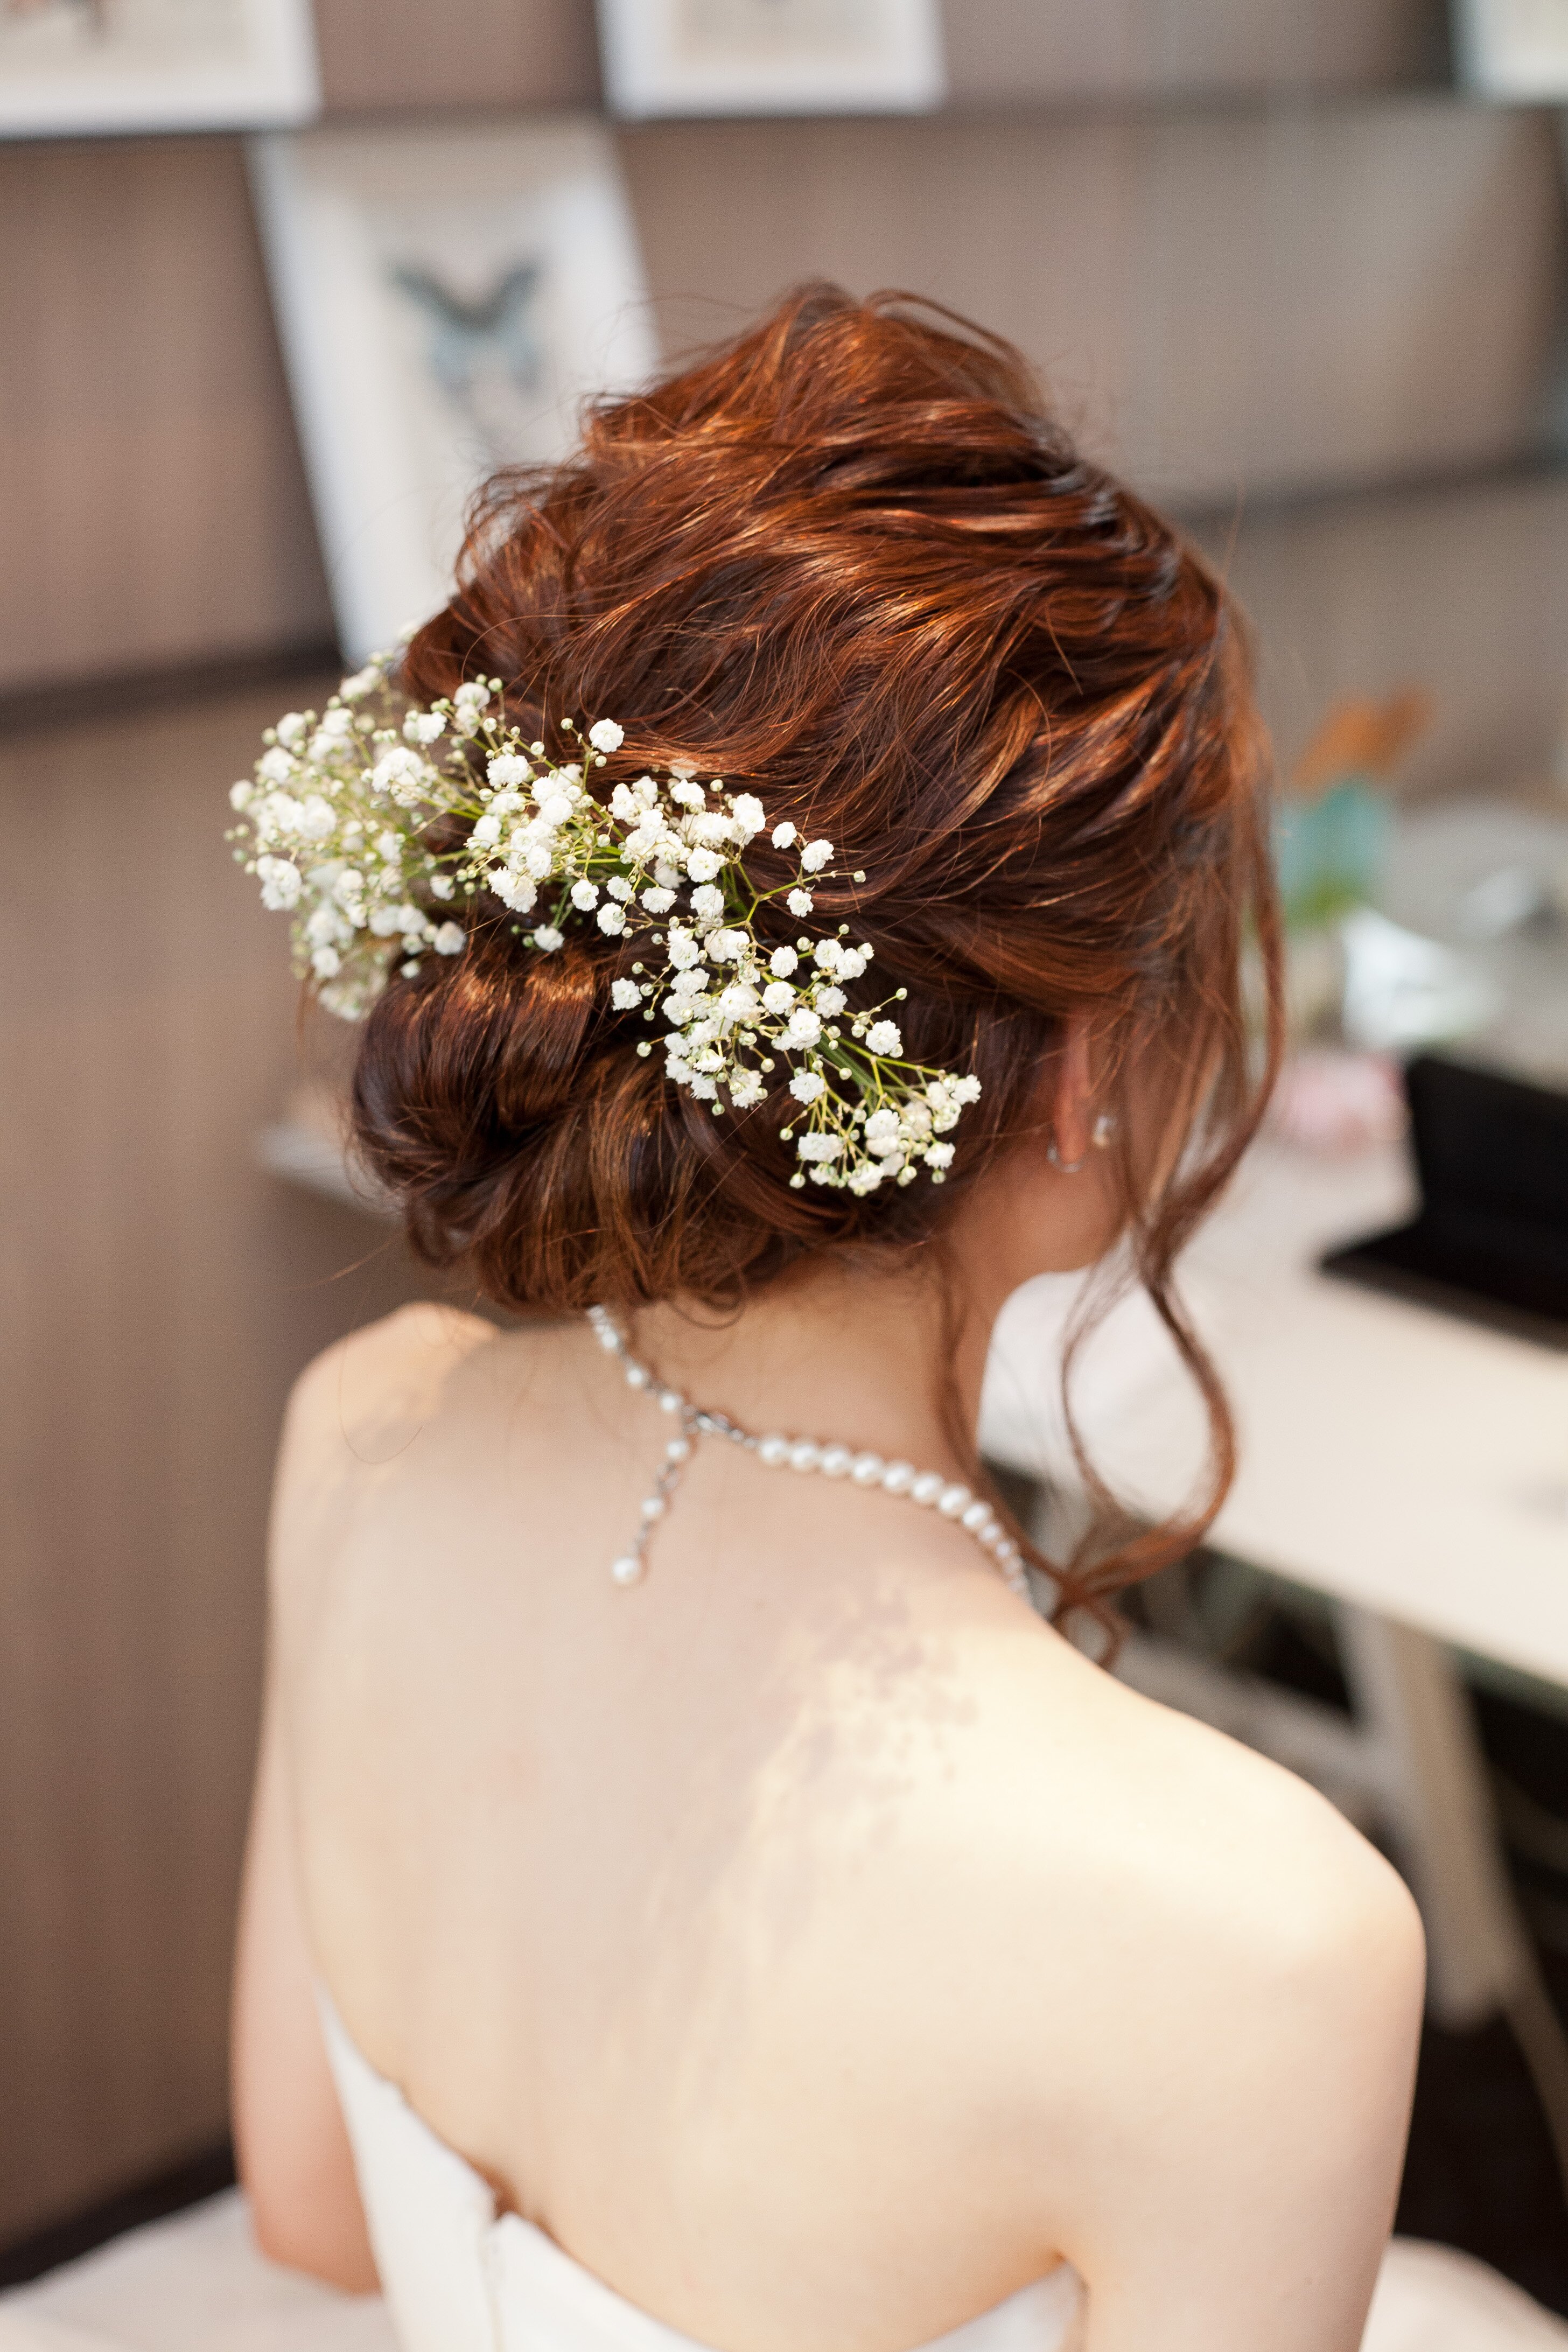 ぜいたく花嫁 髪型 リボン 編み込み 最高のヘアスタイルのアイデア